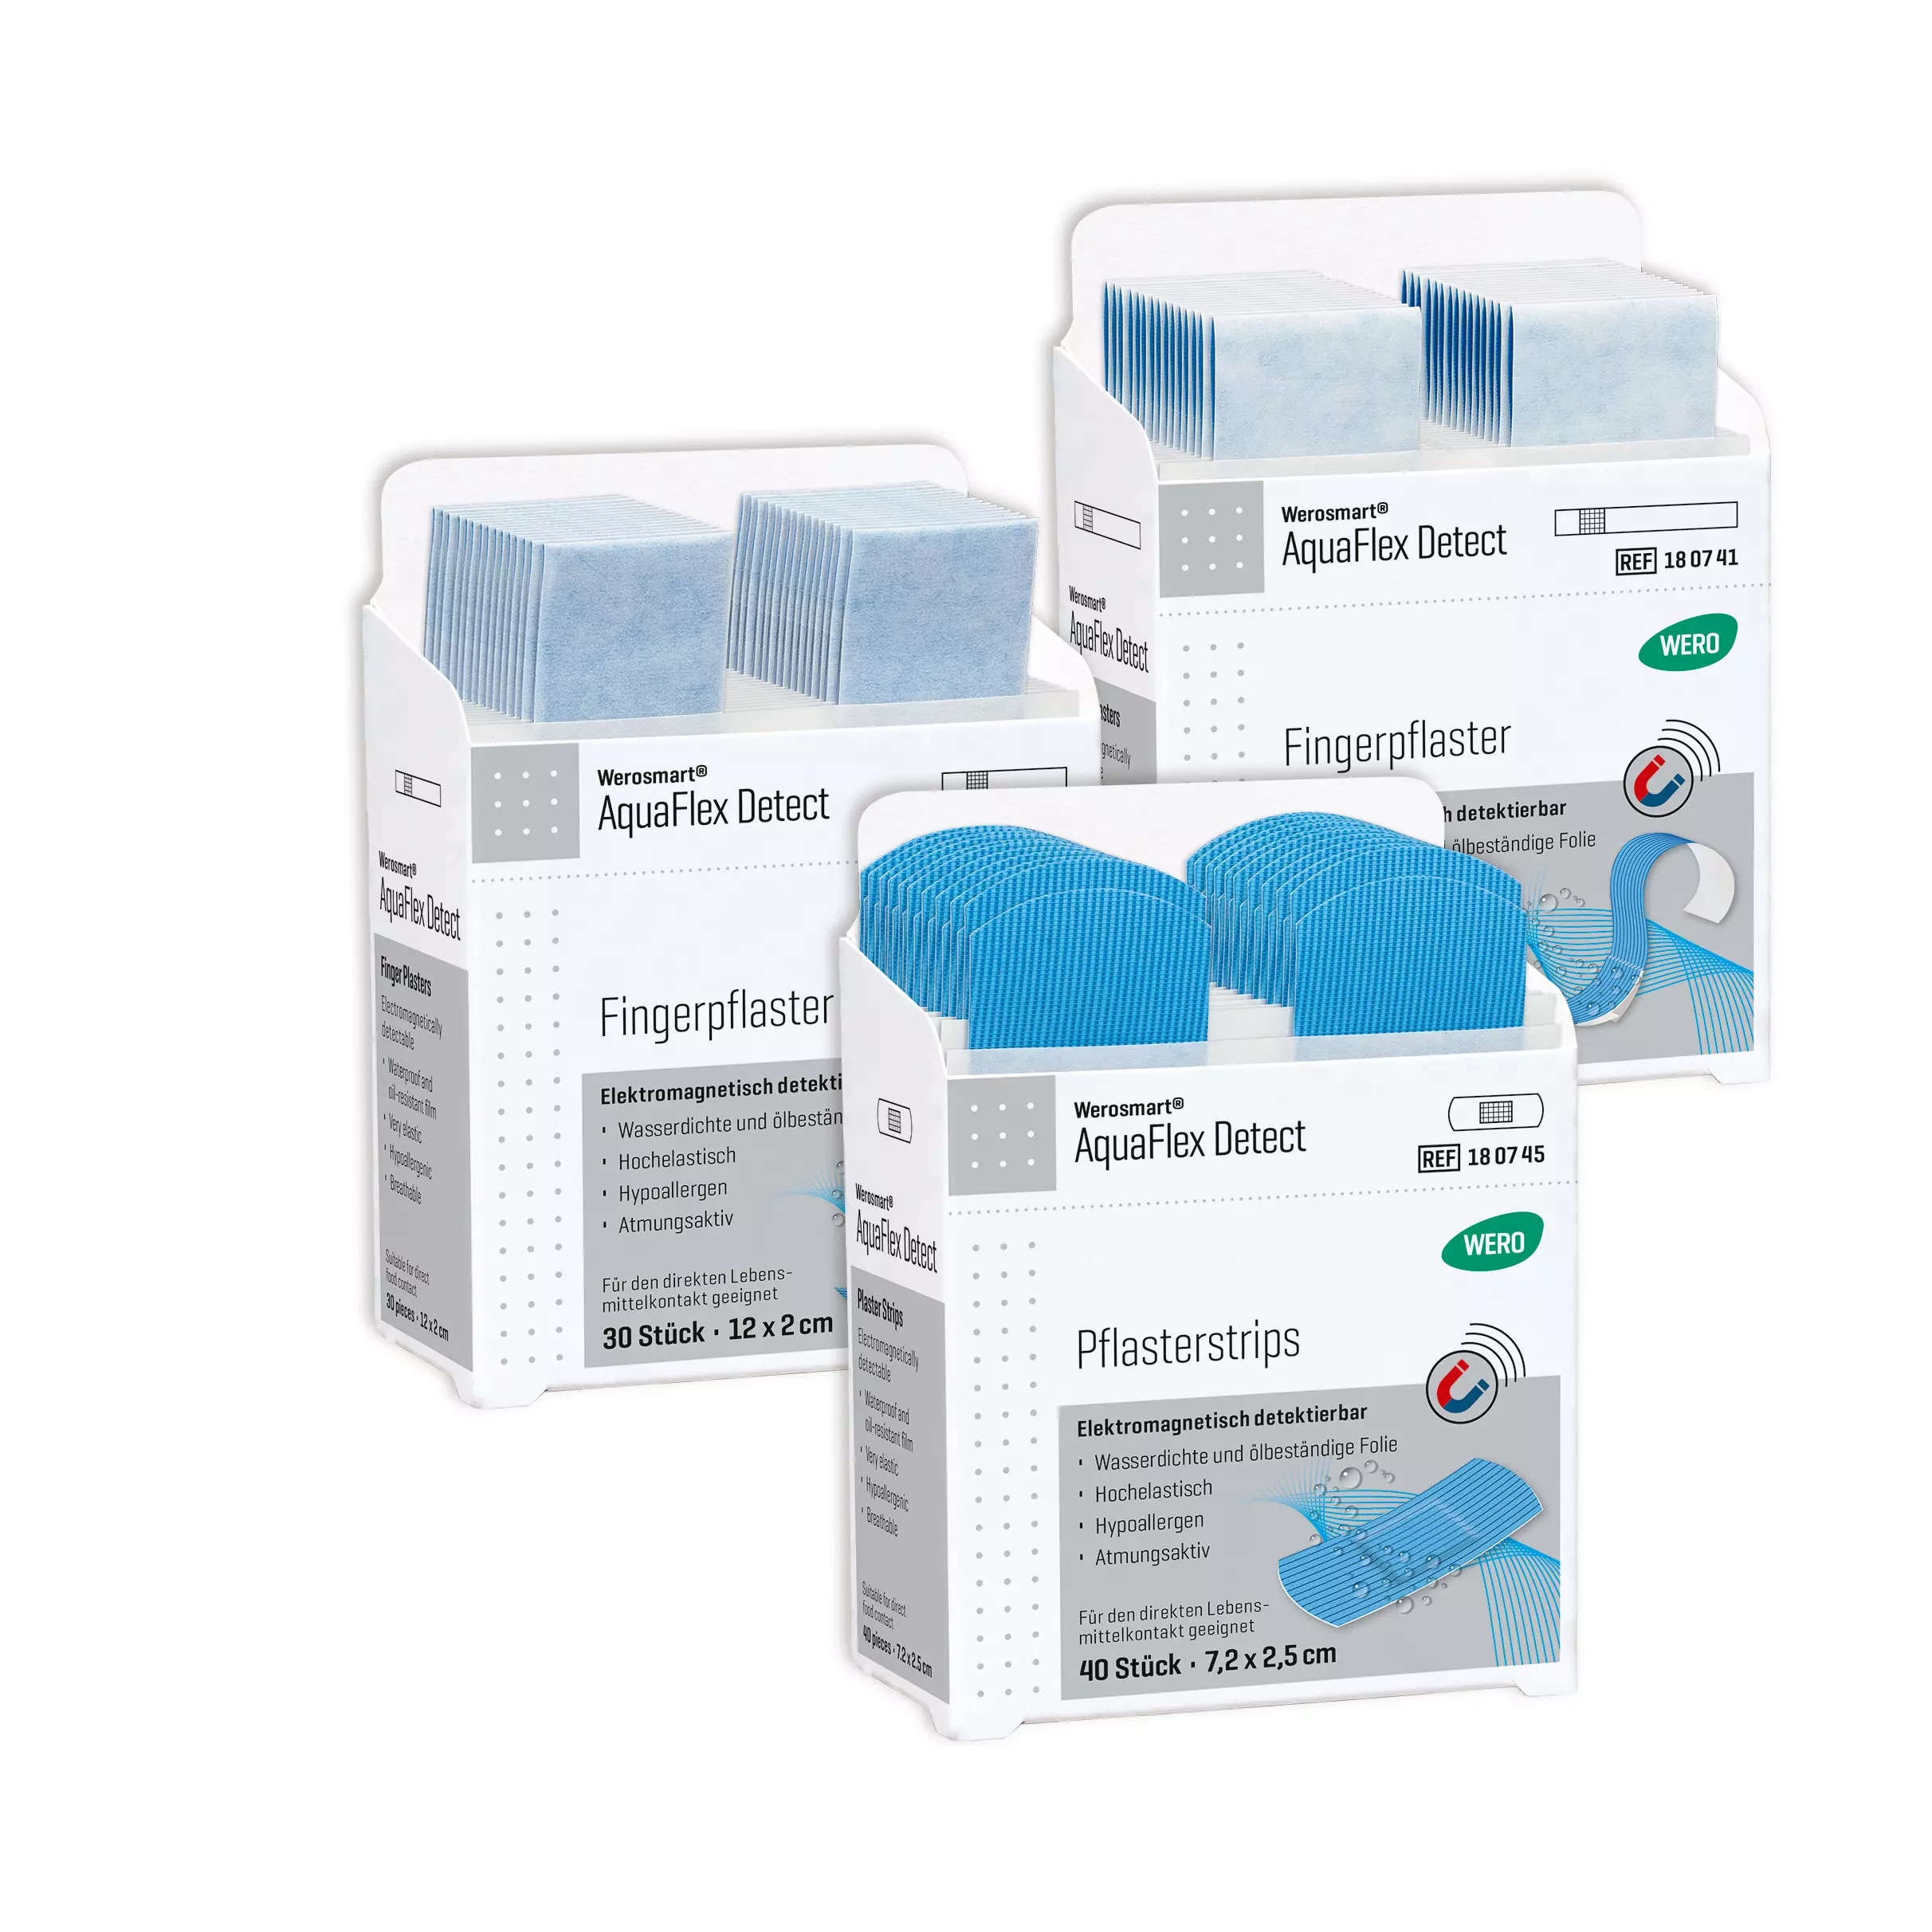 Werosmart® AquaFlex Detect plaster dispenser inserts Finger plasters - 16 cm, insert